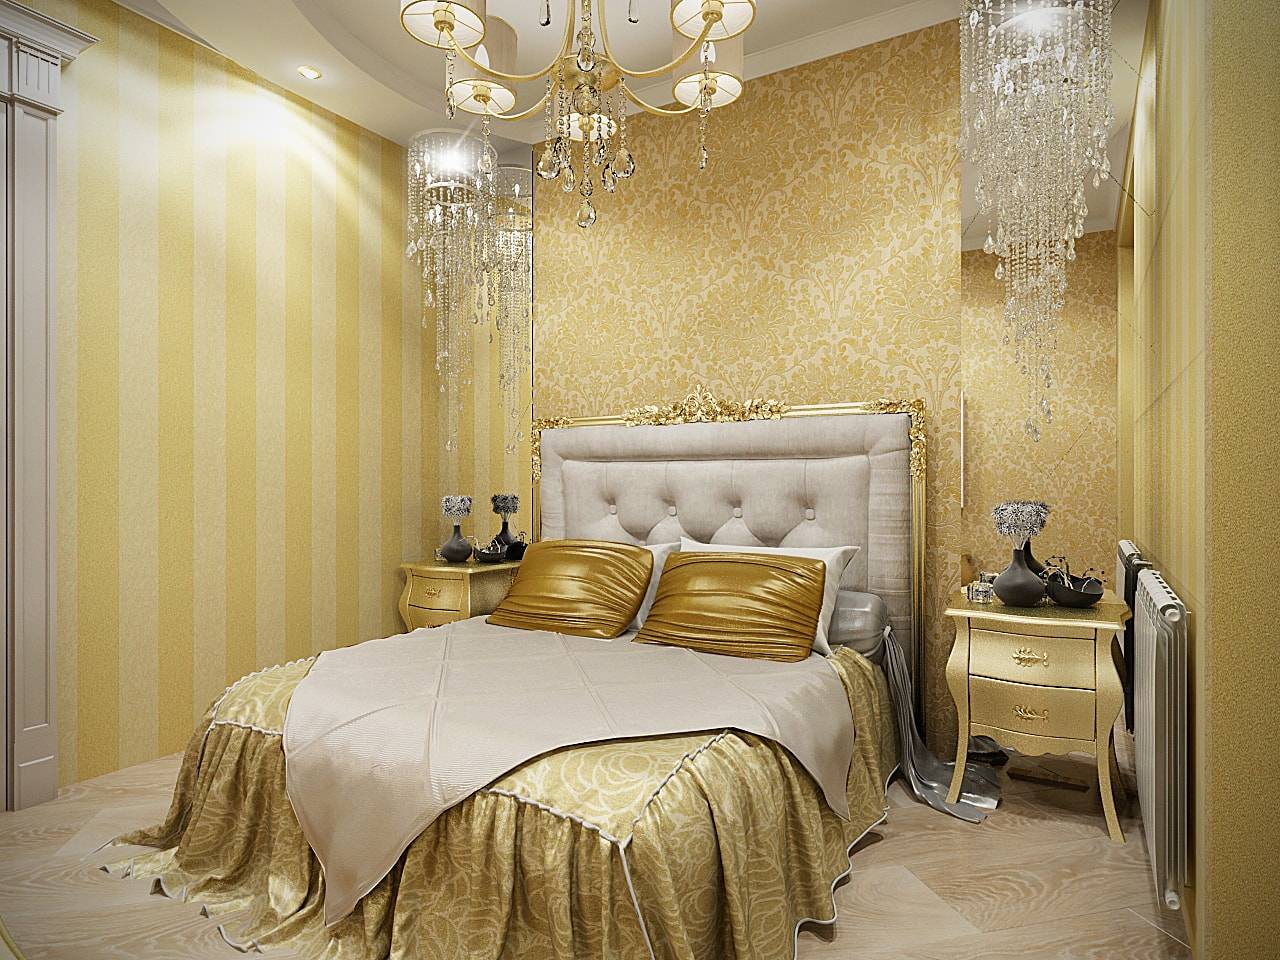 Обои для стен золотистые или позолоченные орнаменты: как подобрать подходящий стиль, в чем особенность оформления небольшой комнаты и как украсить стиль арт-деко